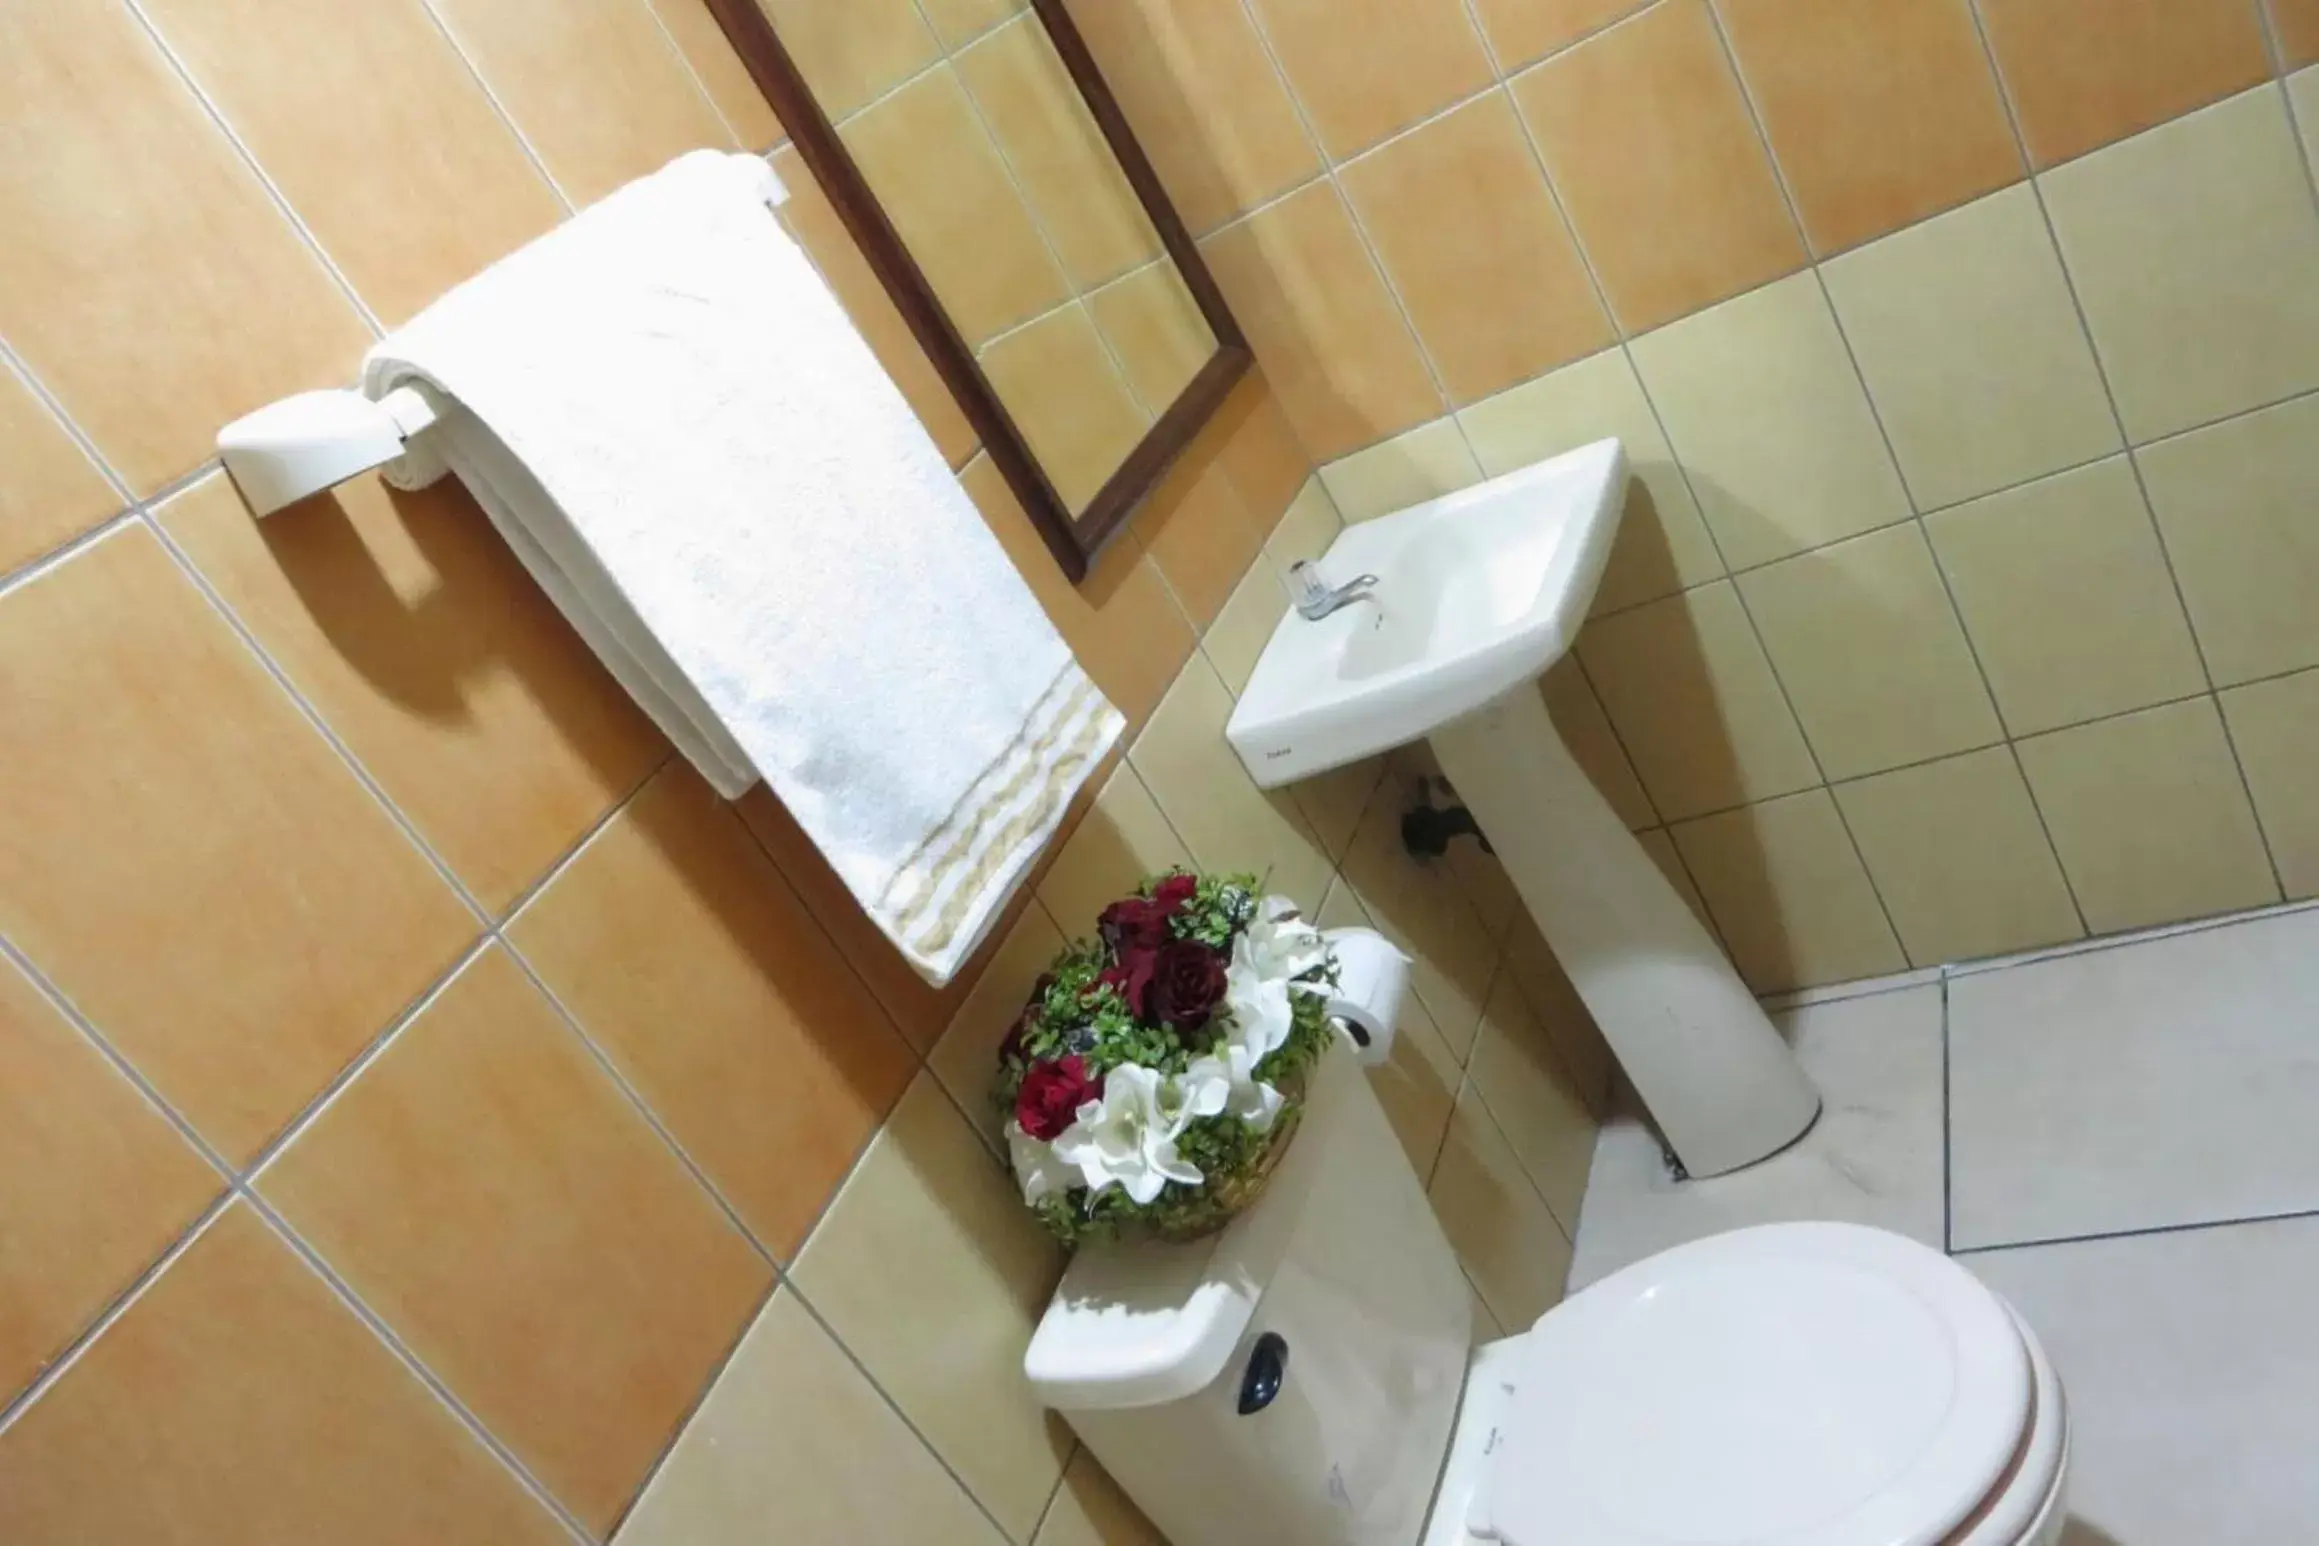 Bathroom in Hotel Quinta Avenida